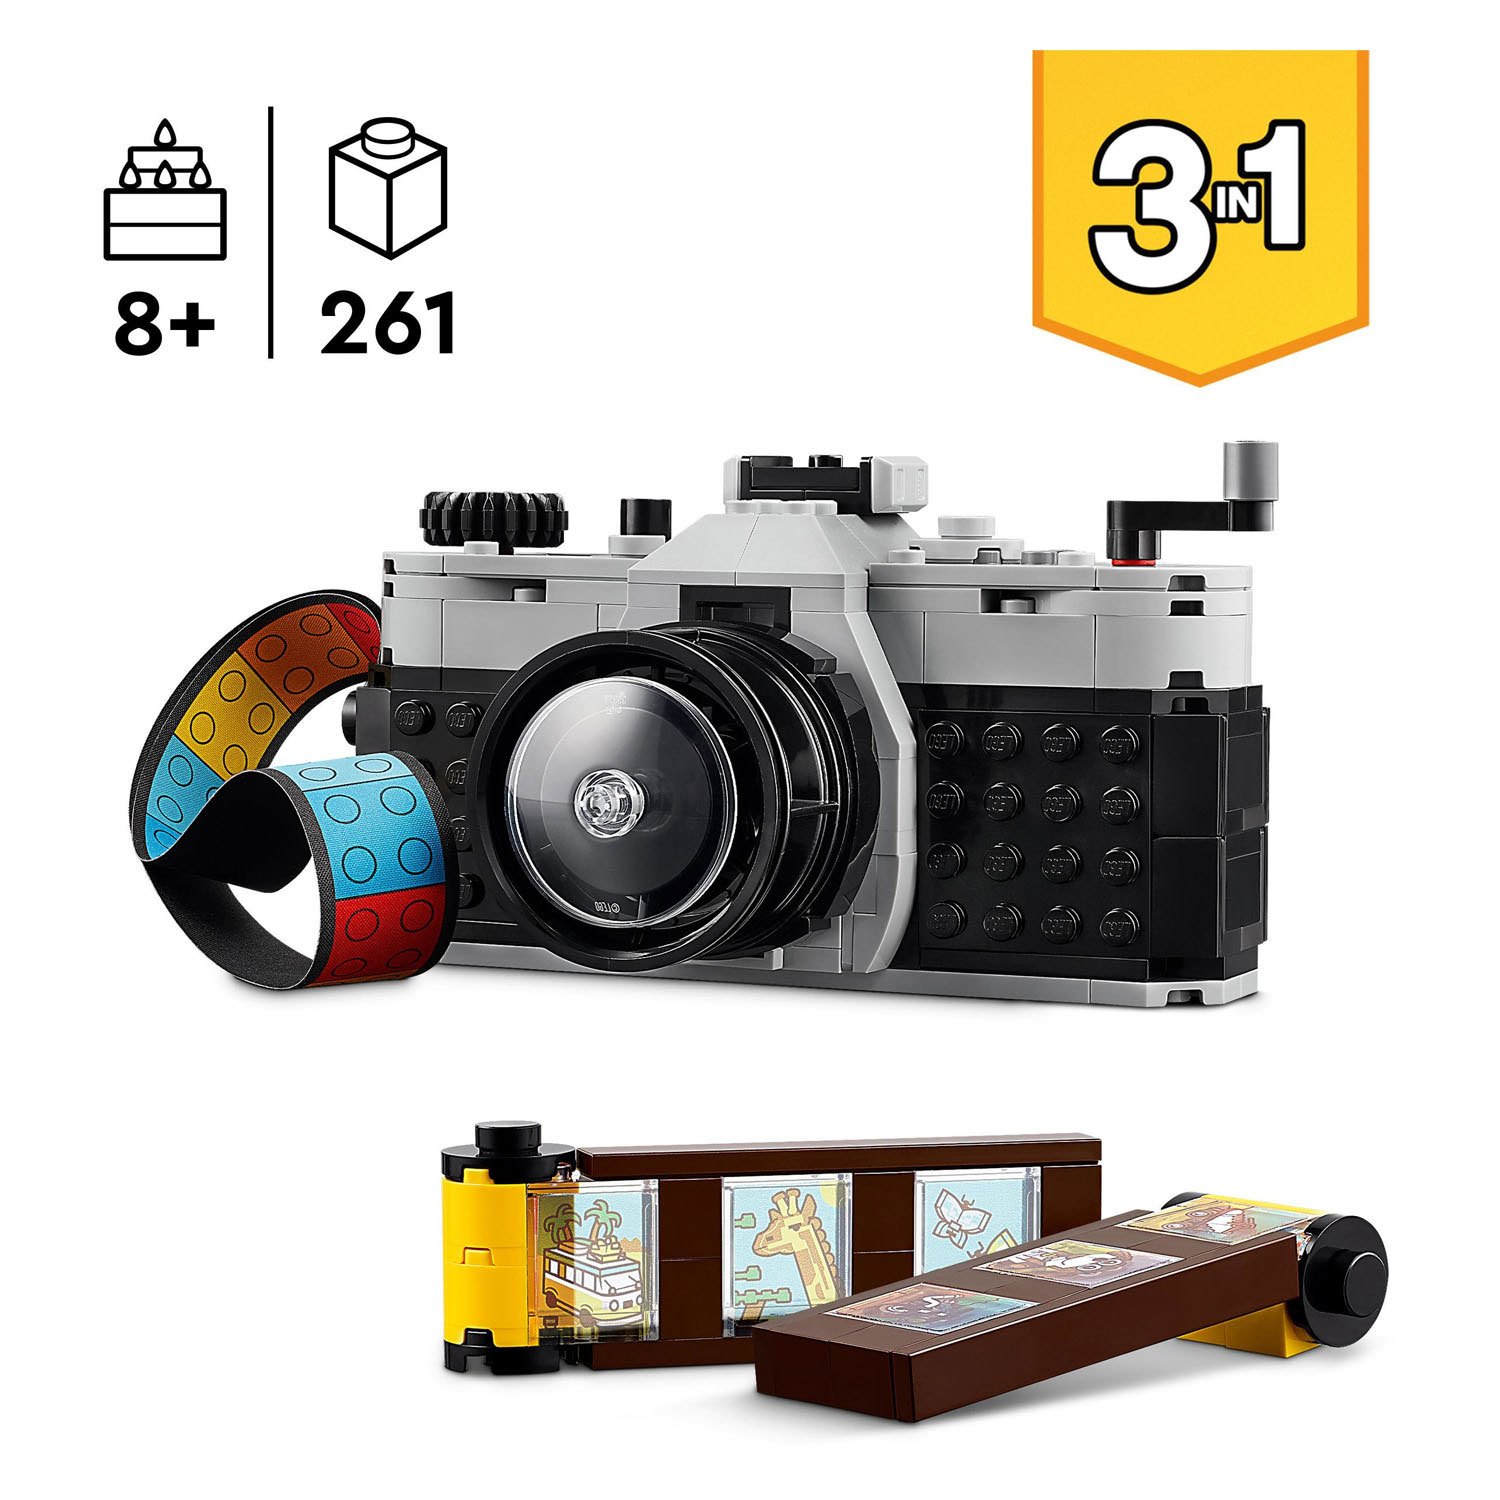 LEGO Creator 31147 Retro-Fotokamera